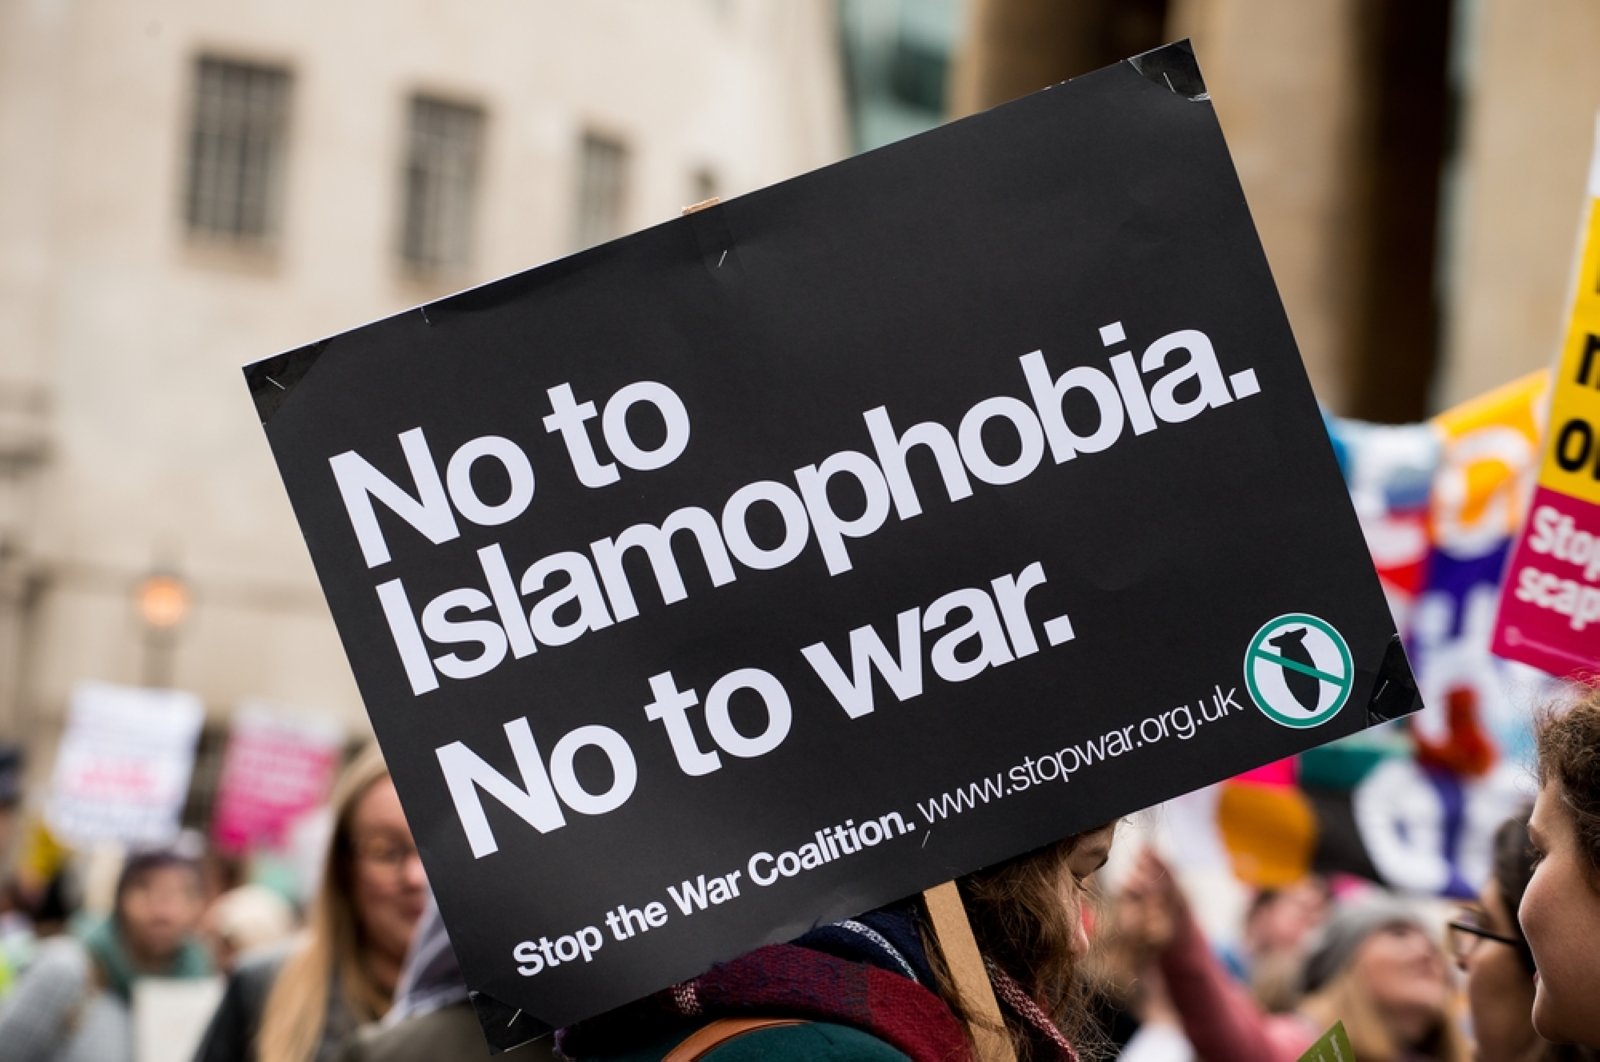 7 dari 10 Muslim di Inggris Mengalami Islamofobia di Tempat Kerja, Survei Menemukan